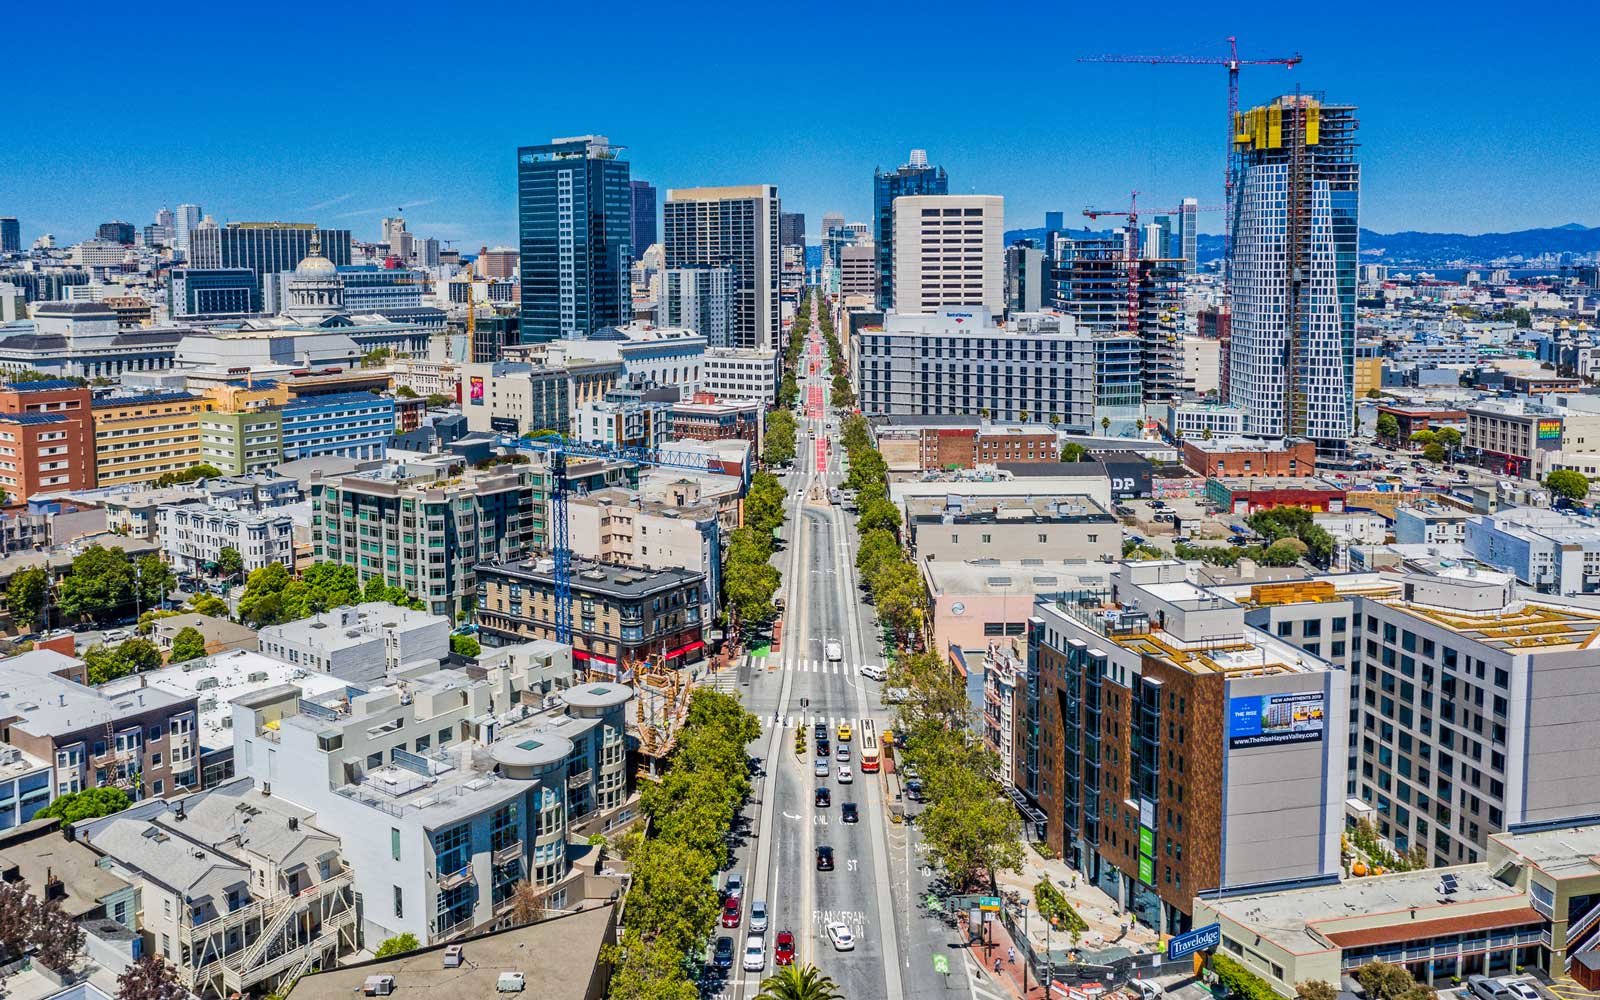 Oracle перенесла конференцию из Сан-Франциско из-за проблем города - 1